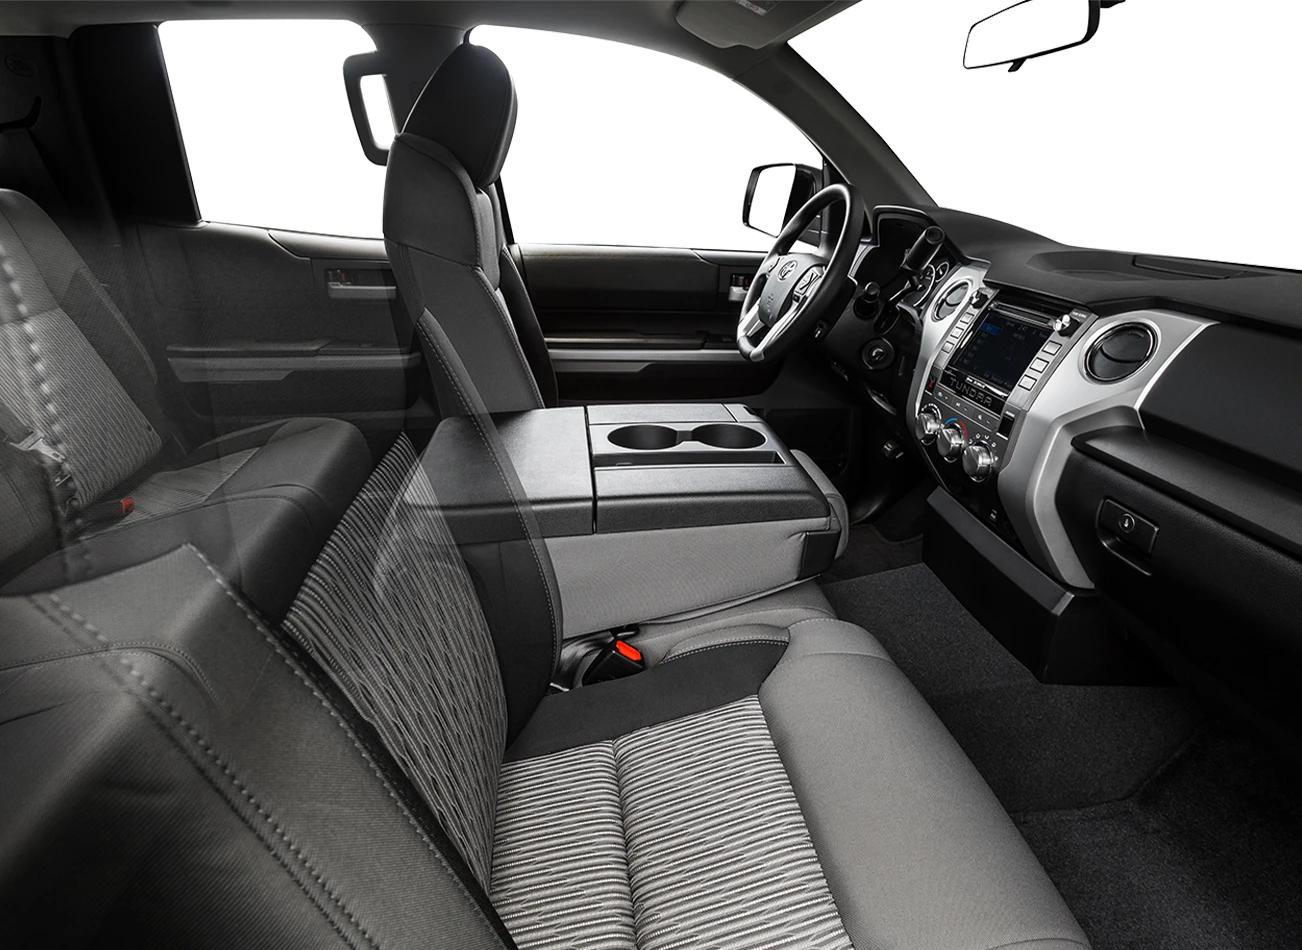 2015 Toyota Tundra: Front seats | CarMax